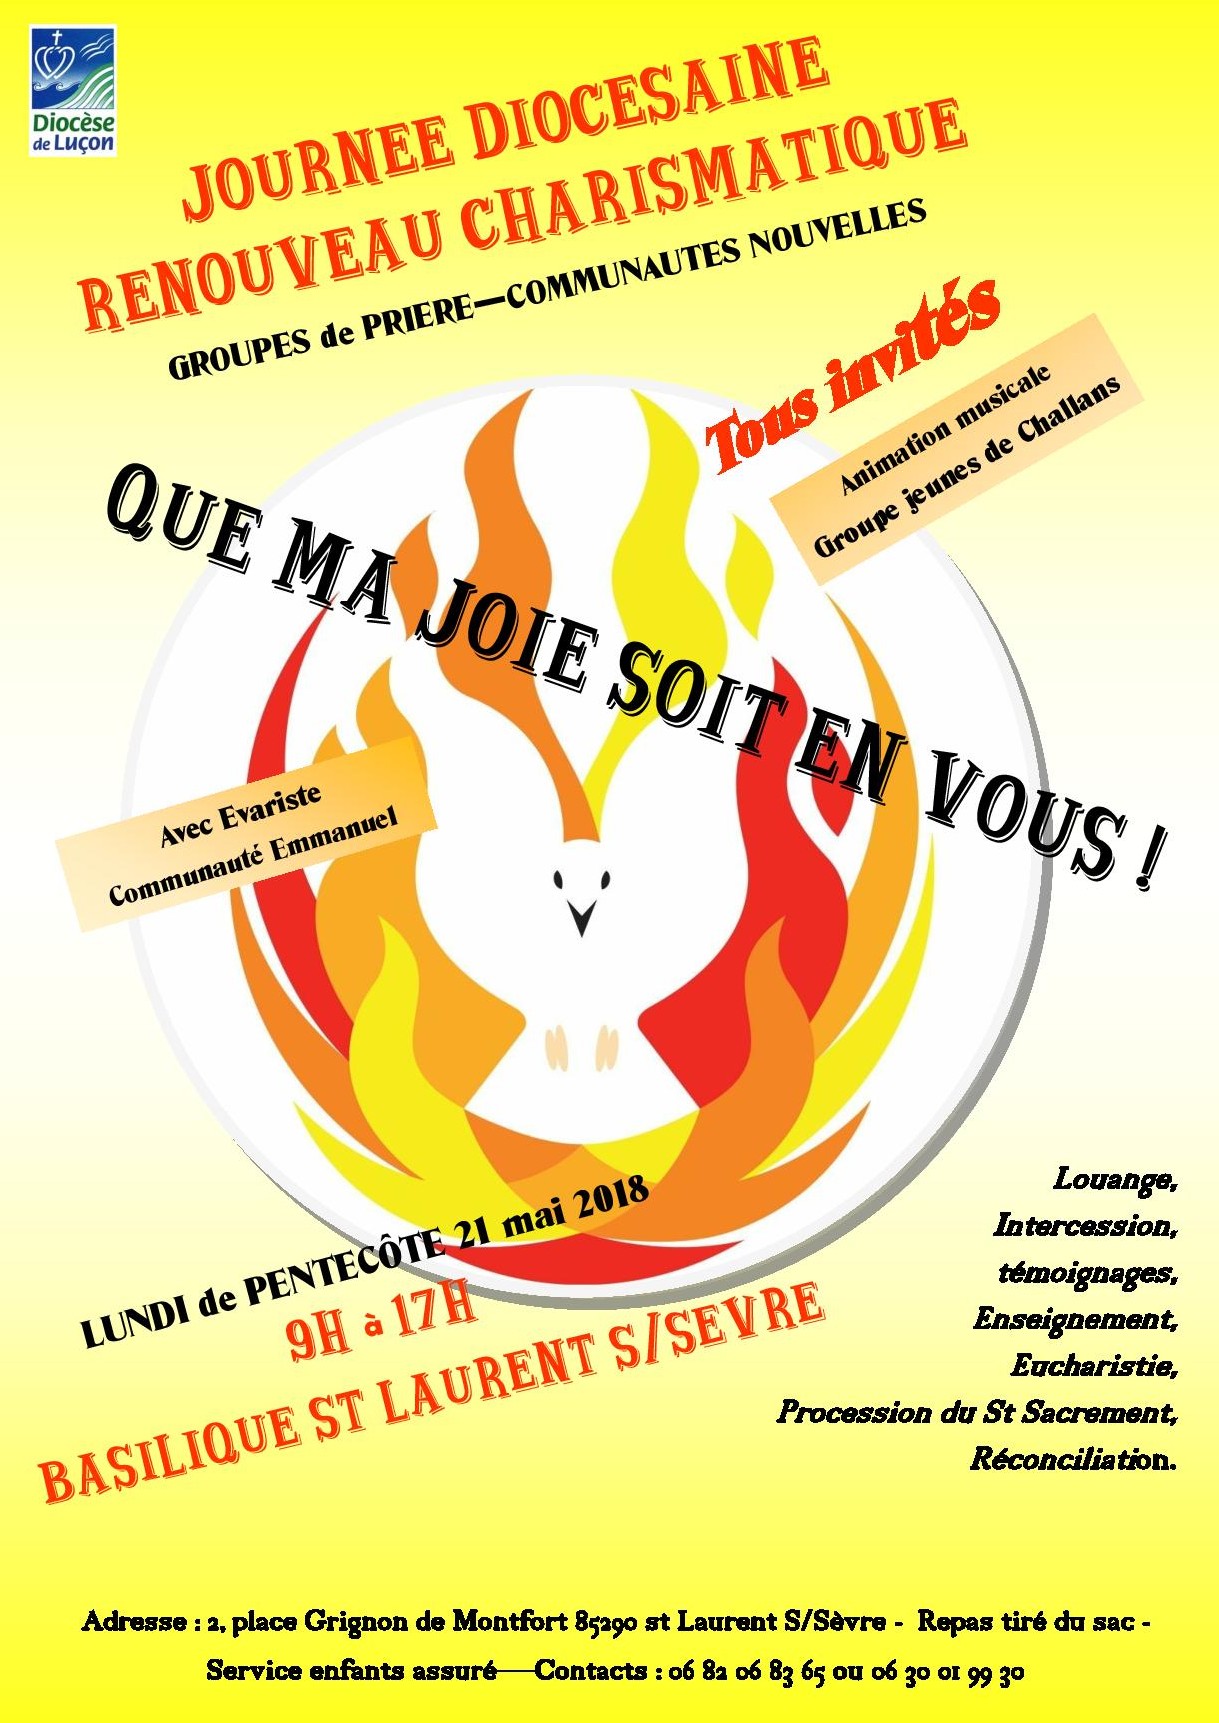 Journée diocésaine (Luçon) Renouveau Charismatique : « Que ma joie soit en vous ! » le 21 mai 2018 à St Laurent-sur-Sèvre (85)